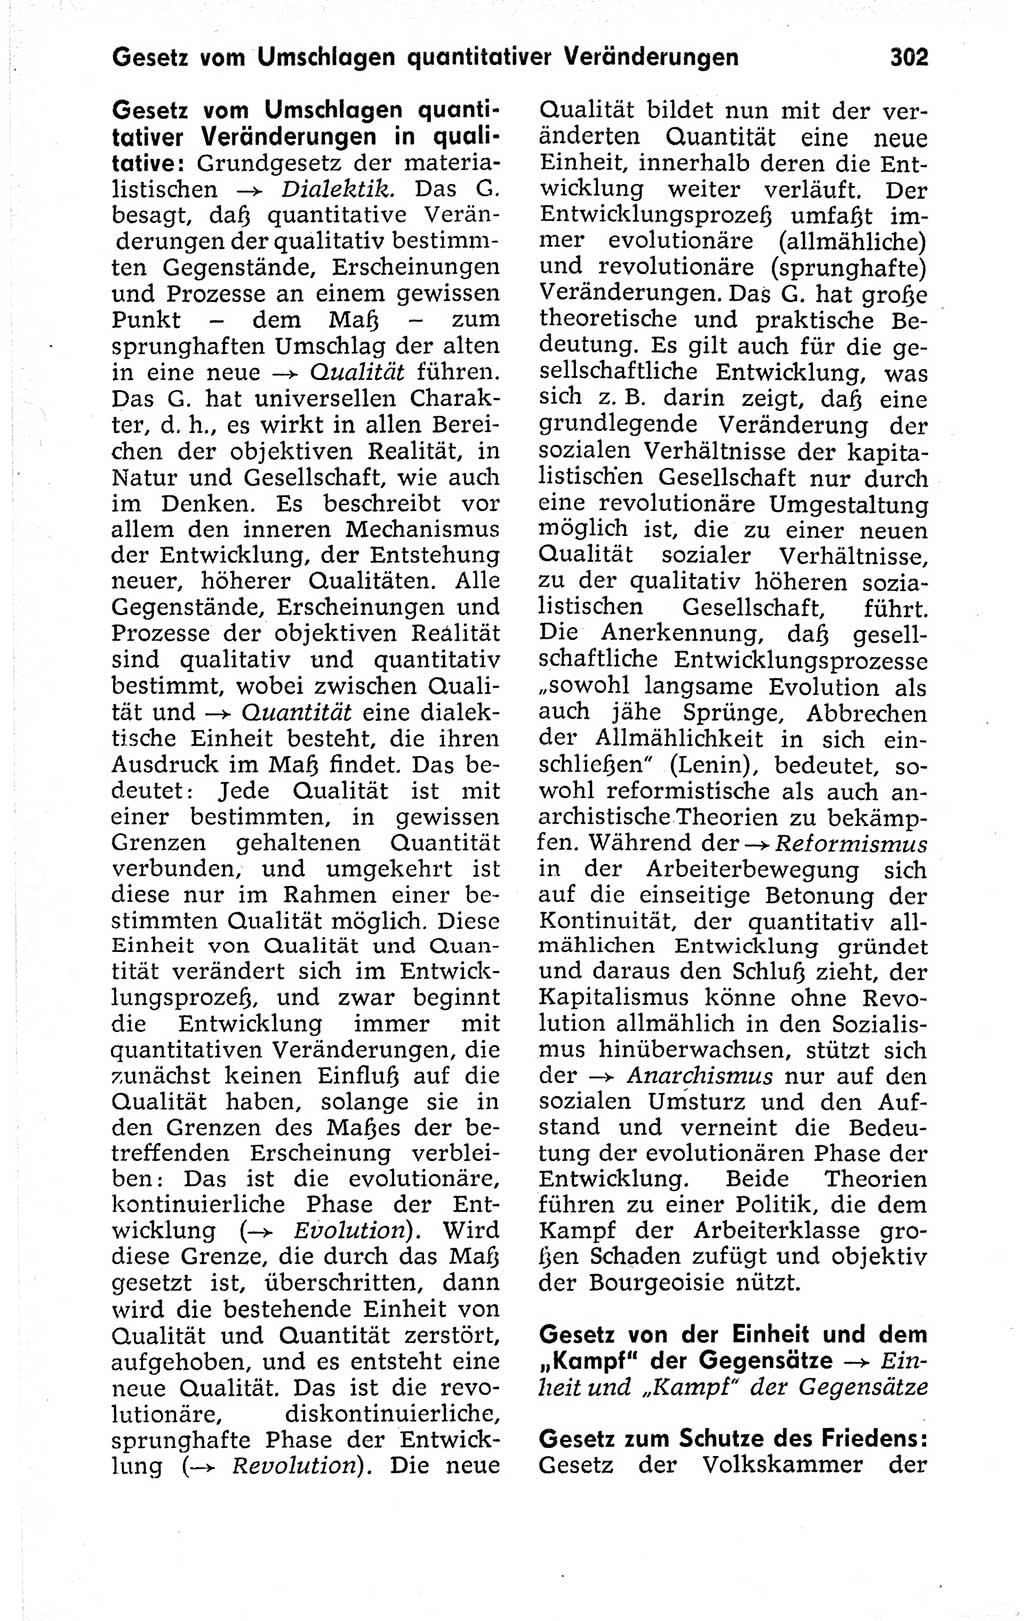 Kleines politisches Wörterbuch [Deutsche Demokratische Republik (DDR)] 1973, Seite 302 (Kl. pol. Wb. DDR 1973, S. 302)